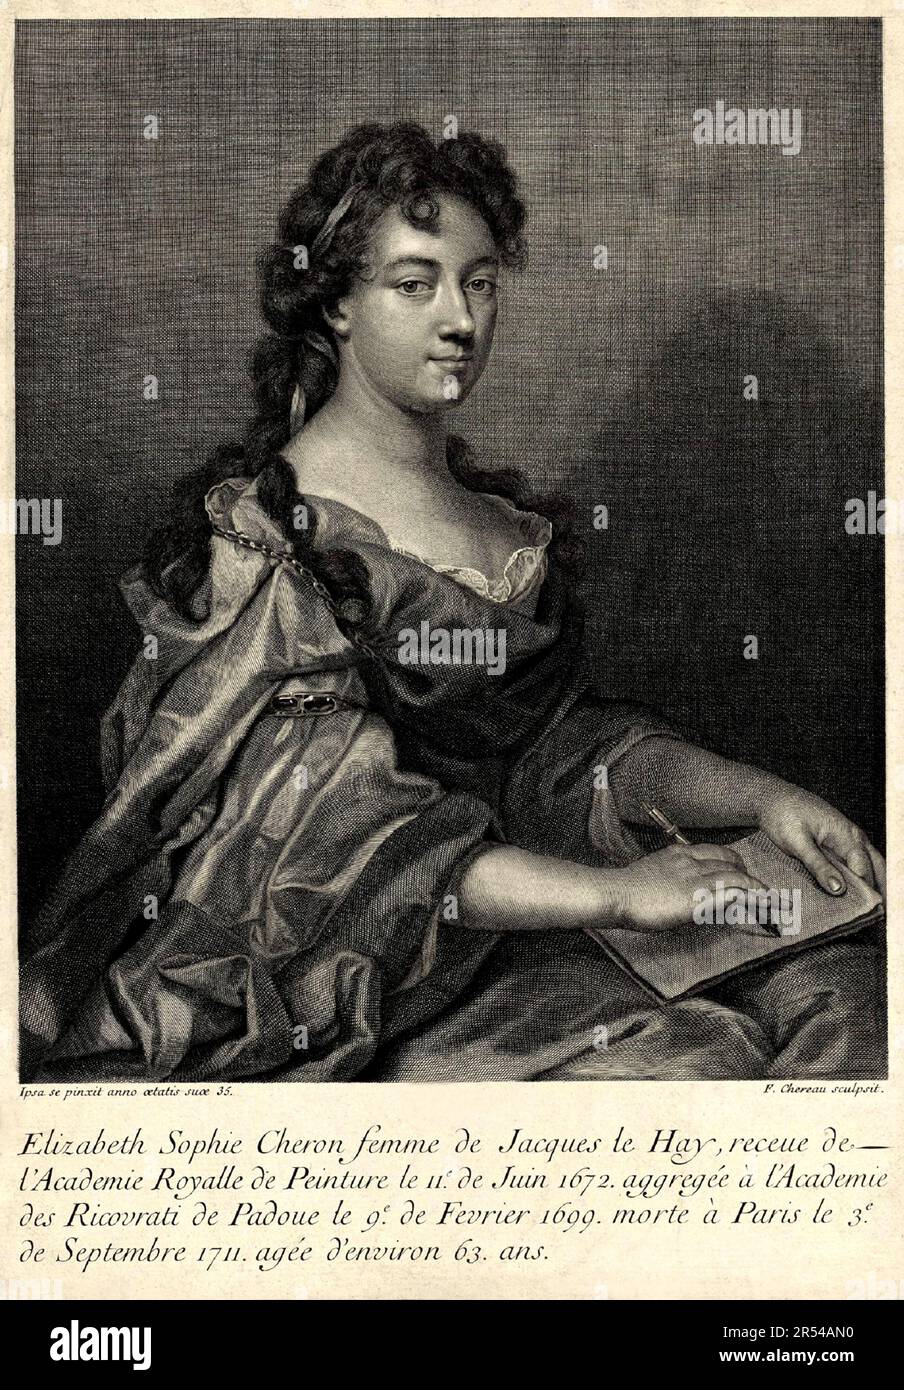 1683 , FRANKREICH : die französische barocke Malerin , Dichterin und Musikerin ELISABETH SOPHIE CHERON de HAY ( Chéron , 1648 - 1711 ) , 35 Jahre alt , in einem Selbstporträt , eingraviert von F. Chereau . - AUTORITRATTO - GESCHICHTE - FOTO STORICHE - RITRATTO - ARTE - VISUAL ARTS - ARTI VISIVE - PITTORE - PITTRICE - BAROCCO - BAROCCA - PITTRICE - GRAVUR - INCISIONE - POESIA - POESIE - POESIE - POET - MUSICA CLASSICA - MUSIK - KLASSISCH - COMPOSITORE - MUSIK KOMPONIST - COMPOSITRICE --- ARCHIVIO GBB Stockfoto